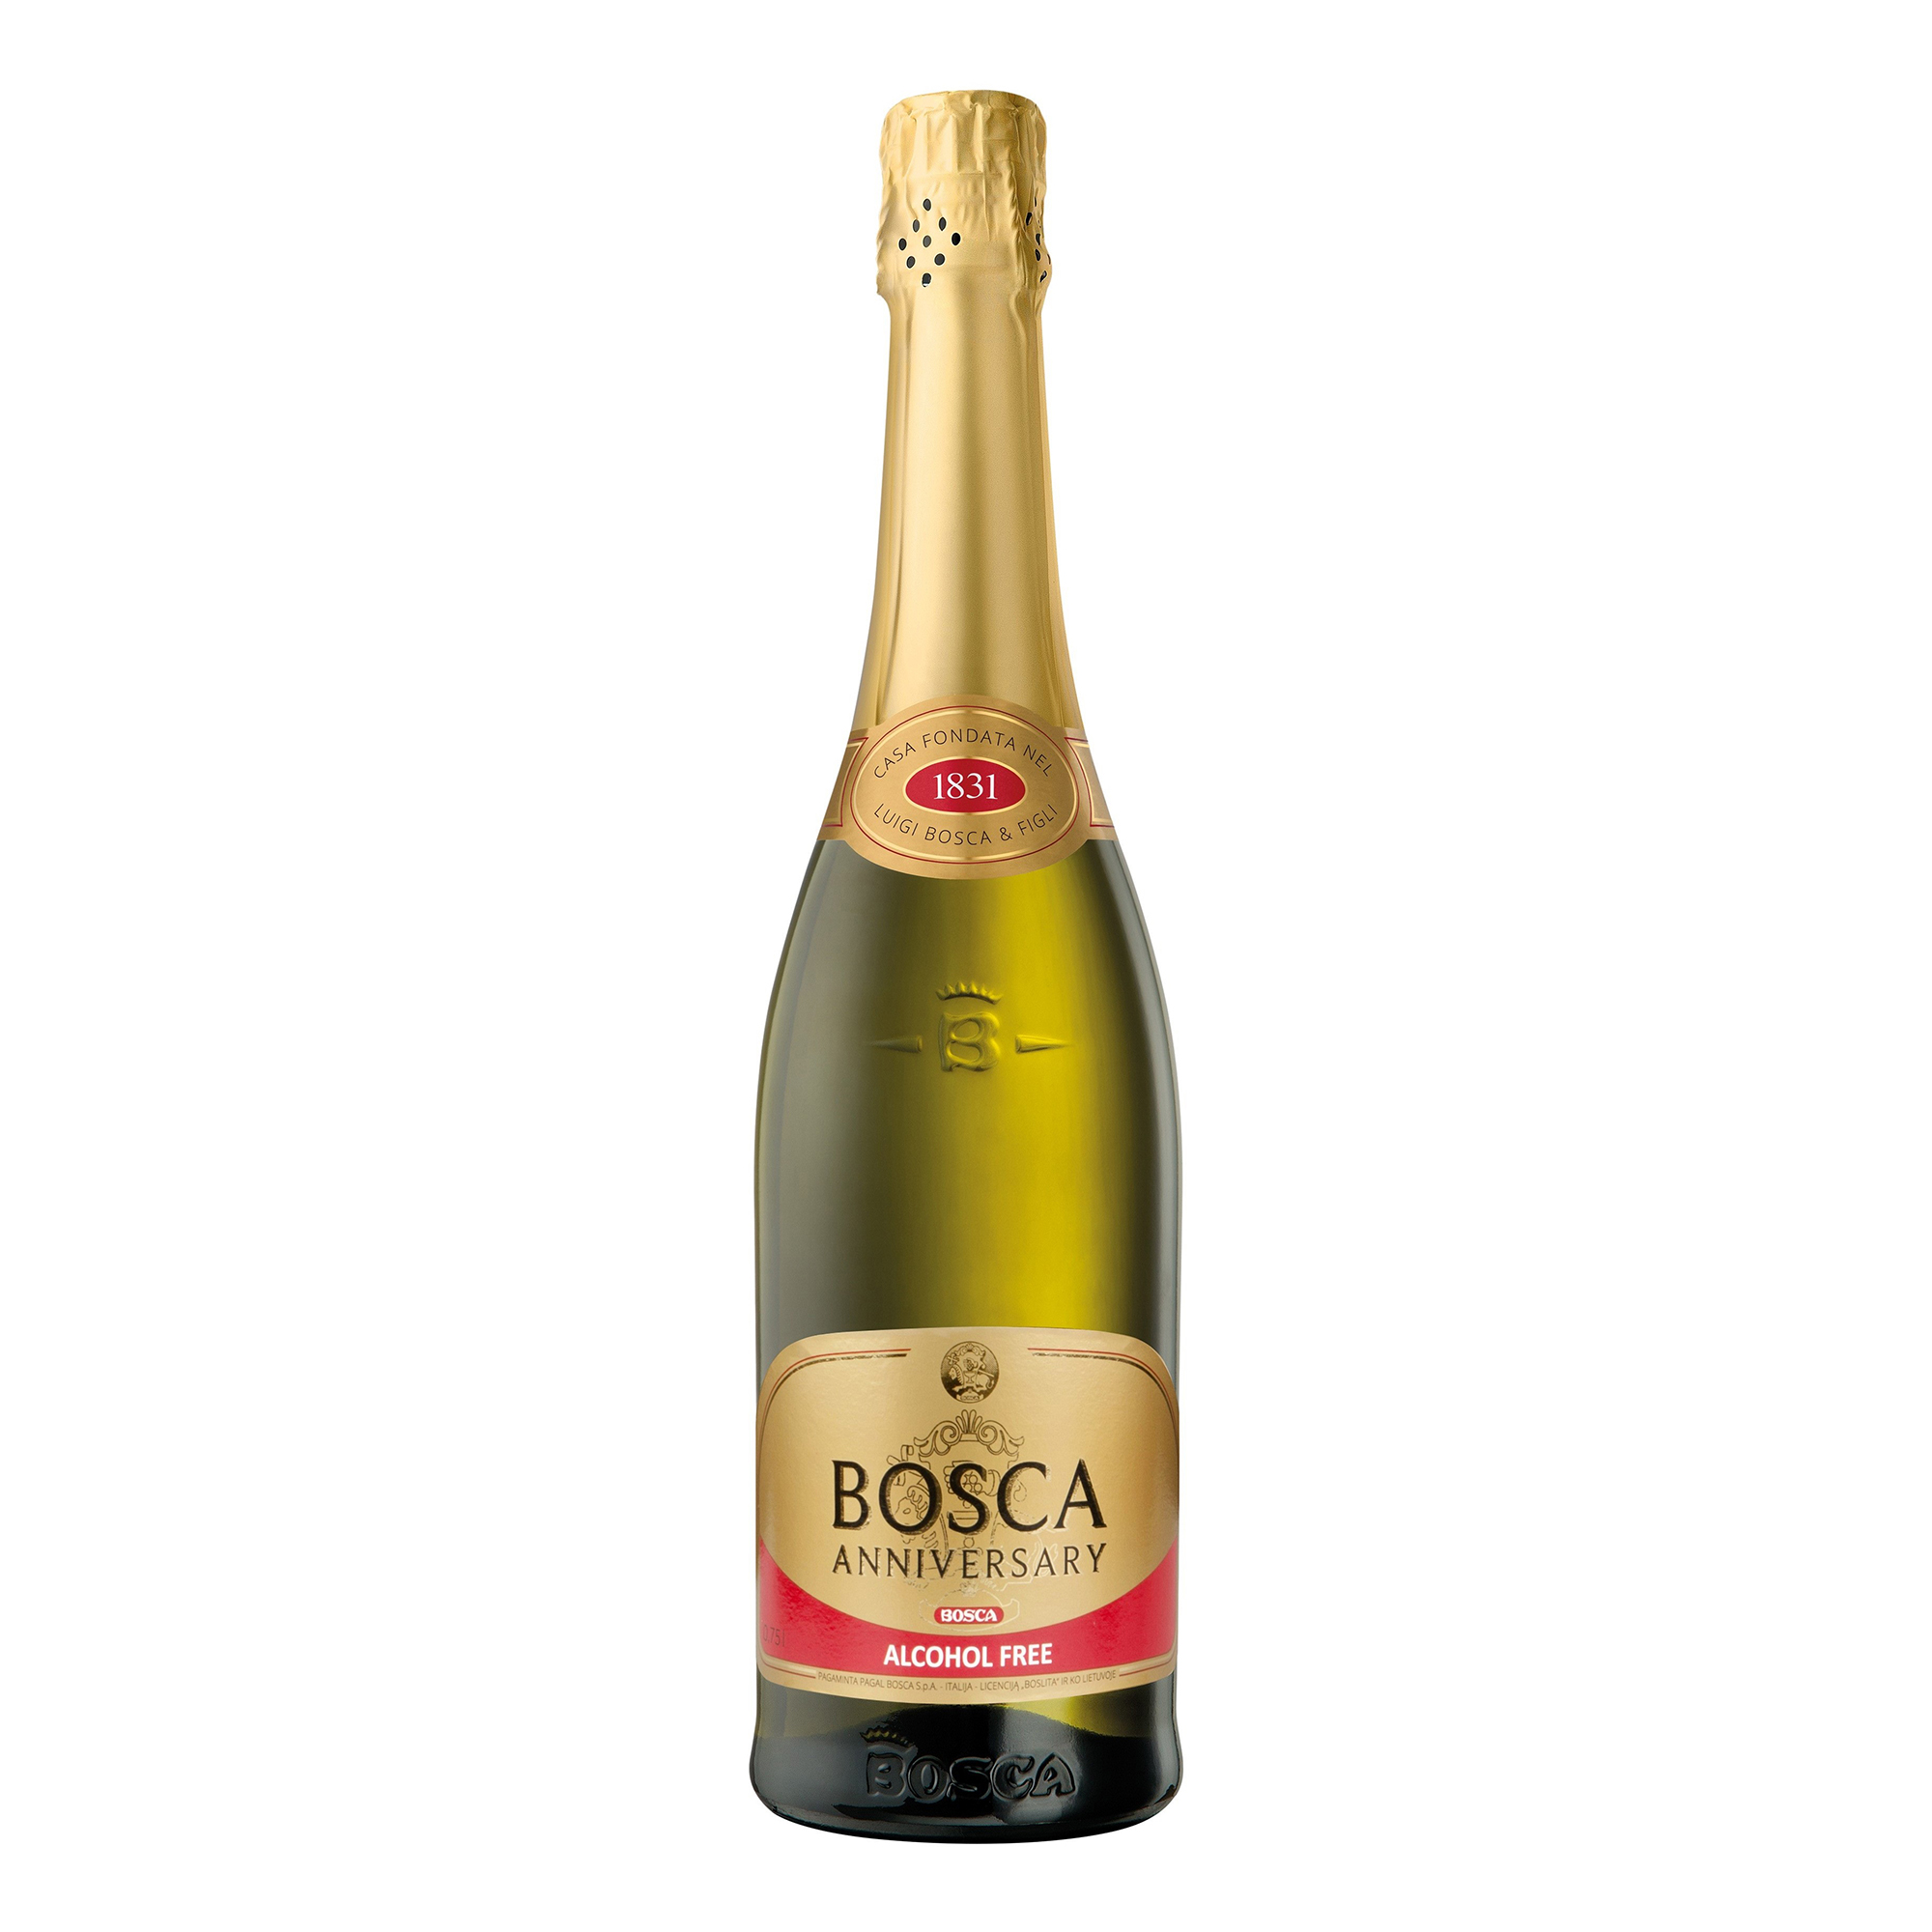 Шампанское боско безалкогольное. Bosca Анниверсари. Боска Анниверсари шампанское. Шампанское Боско Голд Лабел. Bosca Anniversary Sweet, Gold Label, 7,5%.